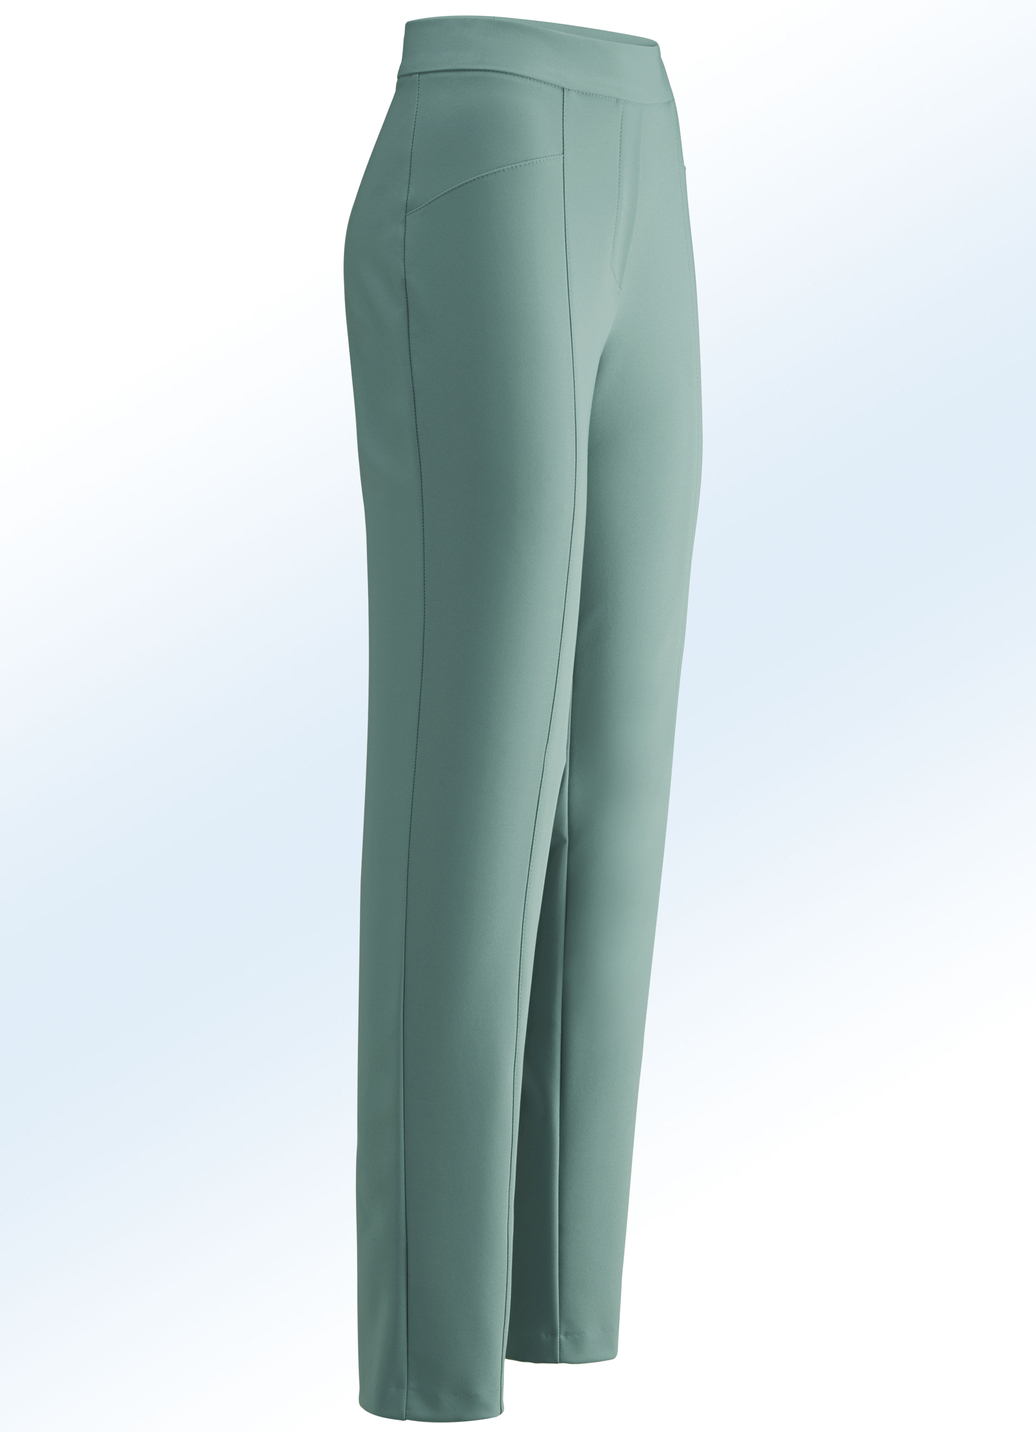 Hose mit hübschen Ziersteppungen, Jadegrün, Größe 26 von KLAUS MODELLE